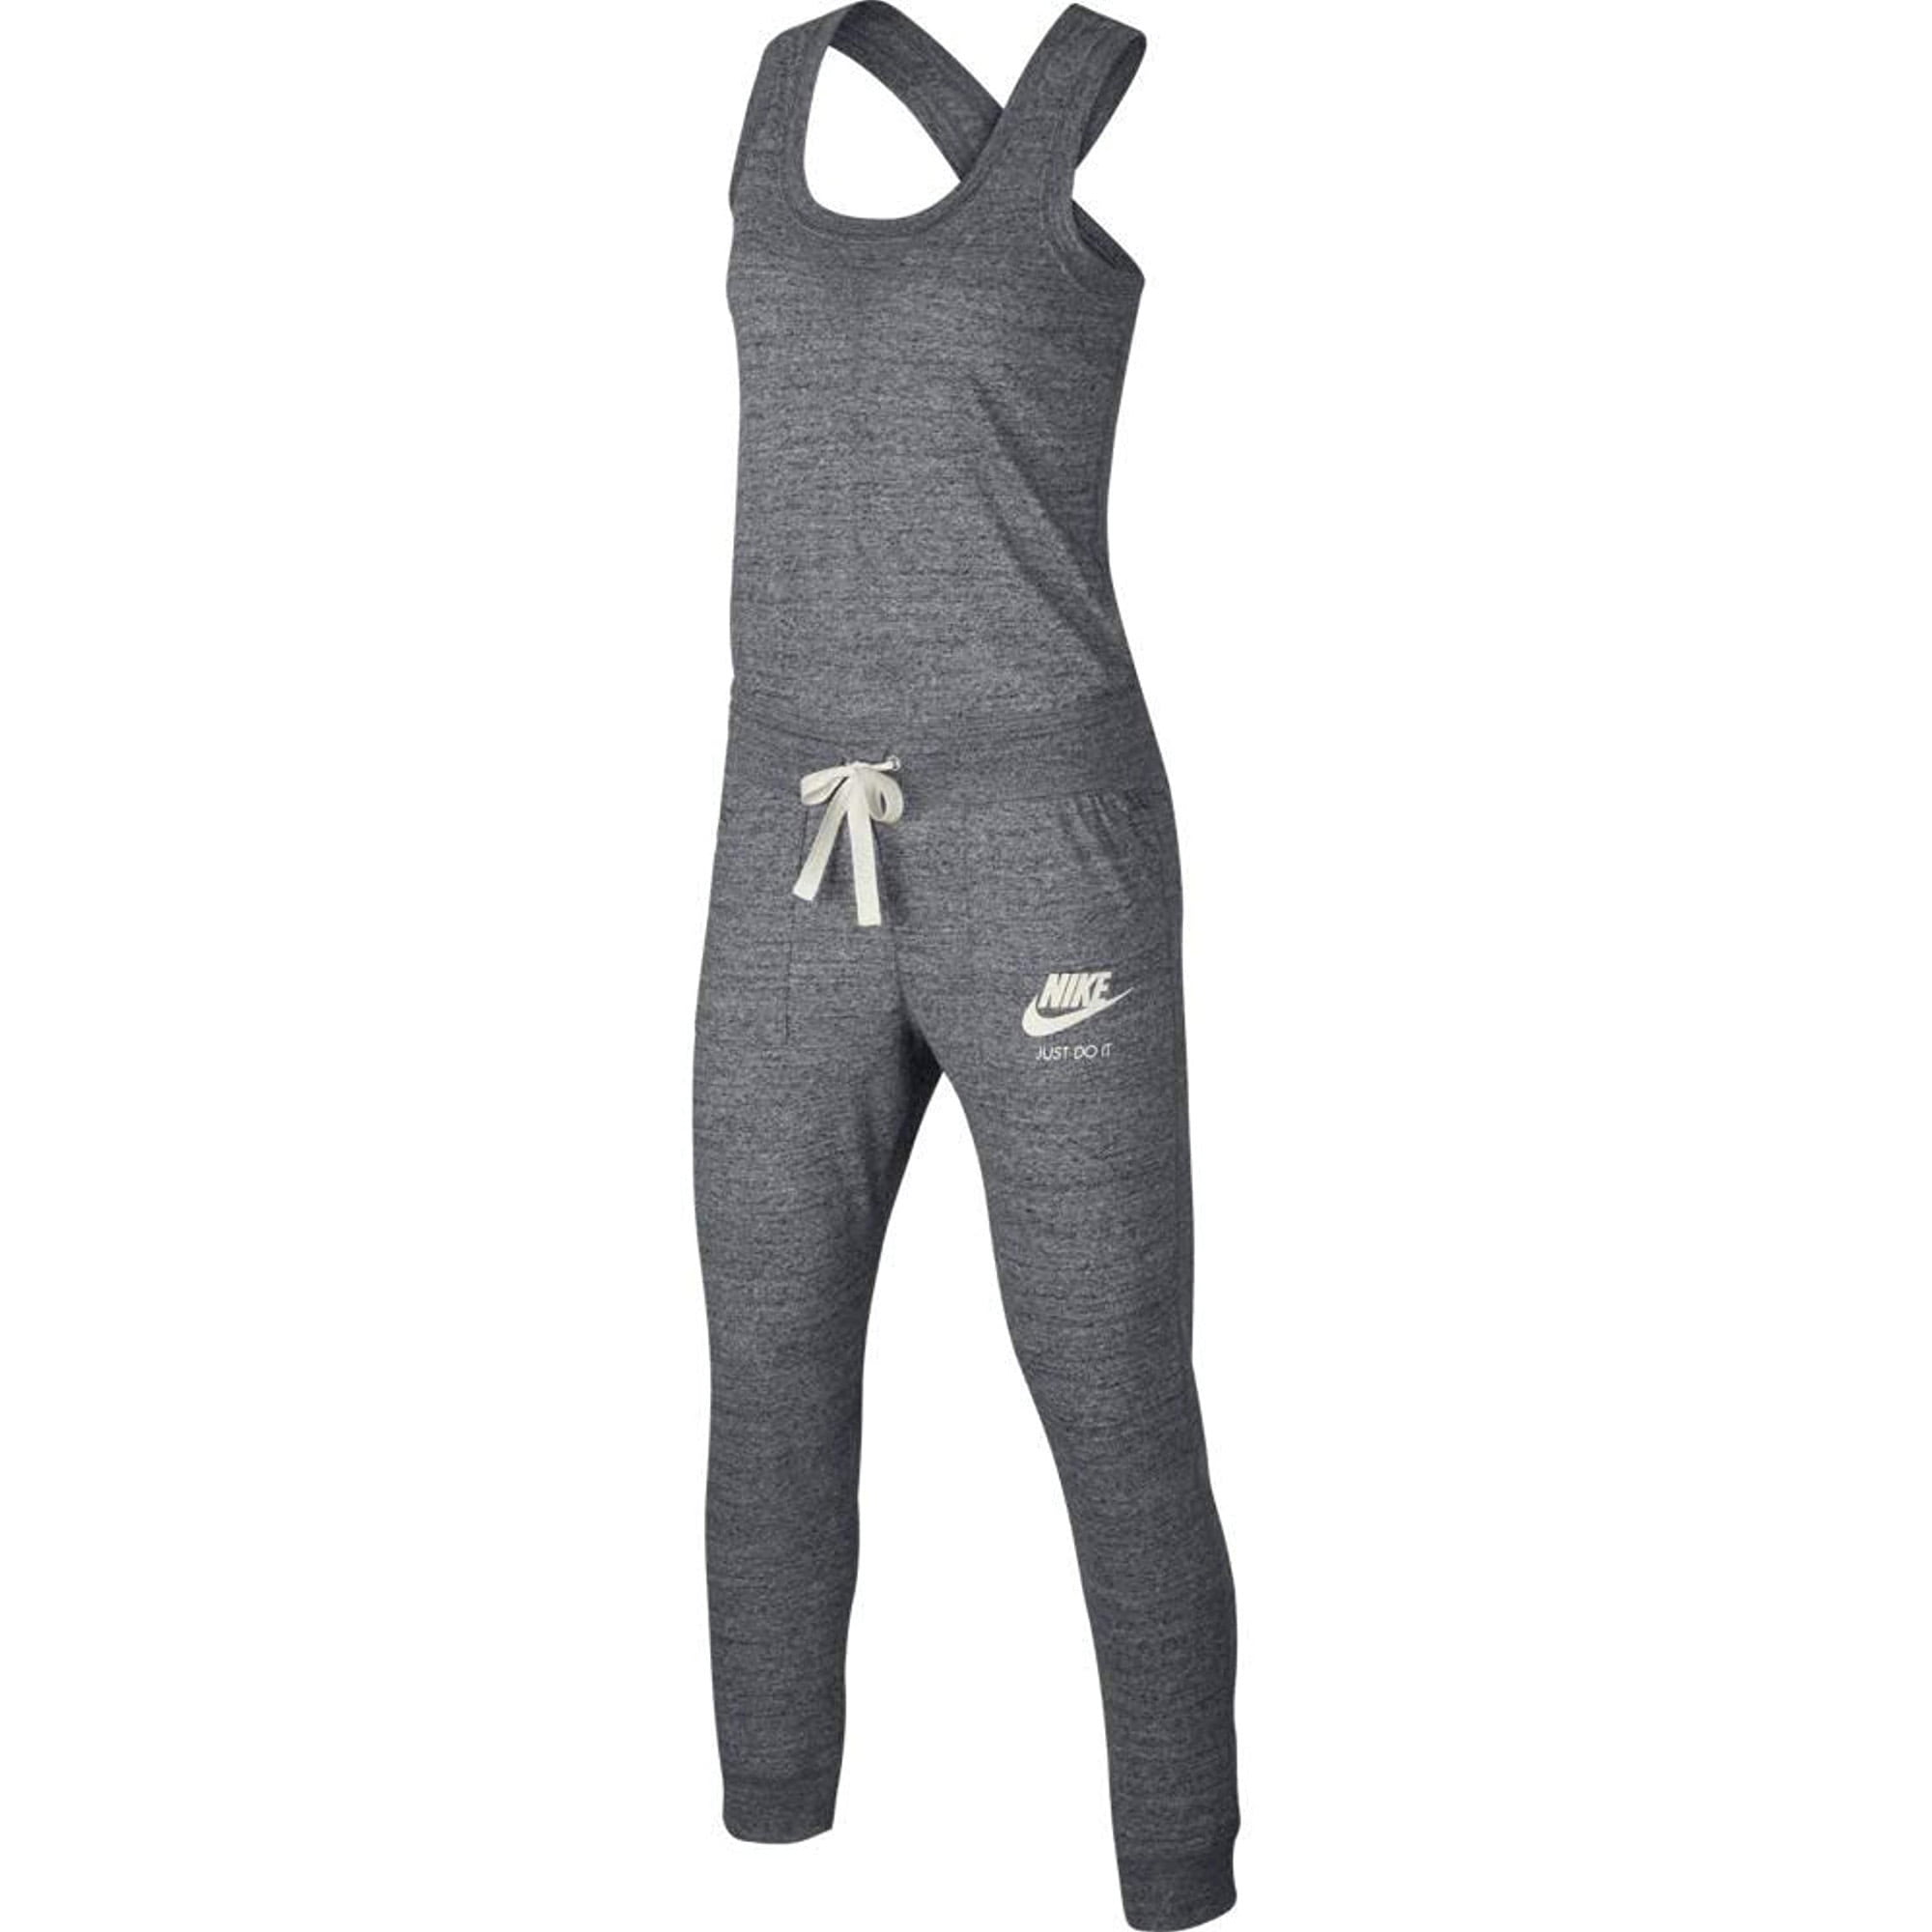 Nike Women's Sportswear Gym Vintage Romper Jumpsuit Grey 929172